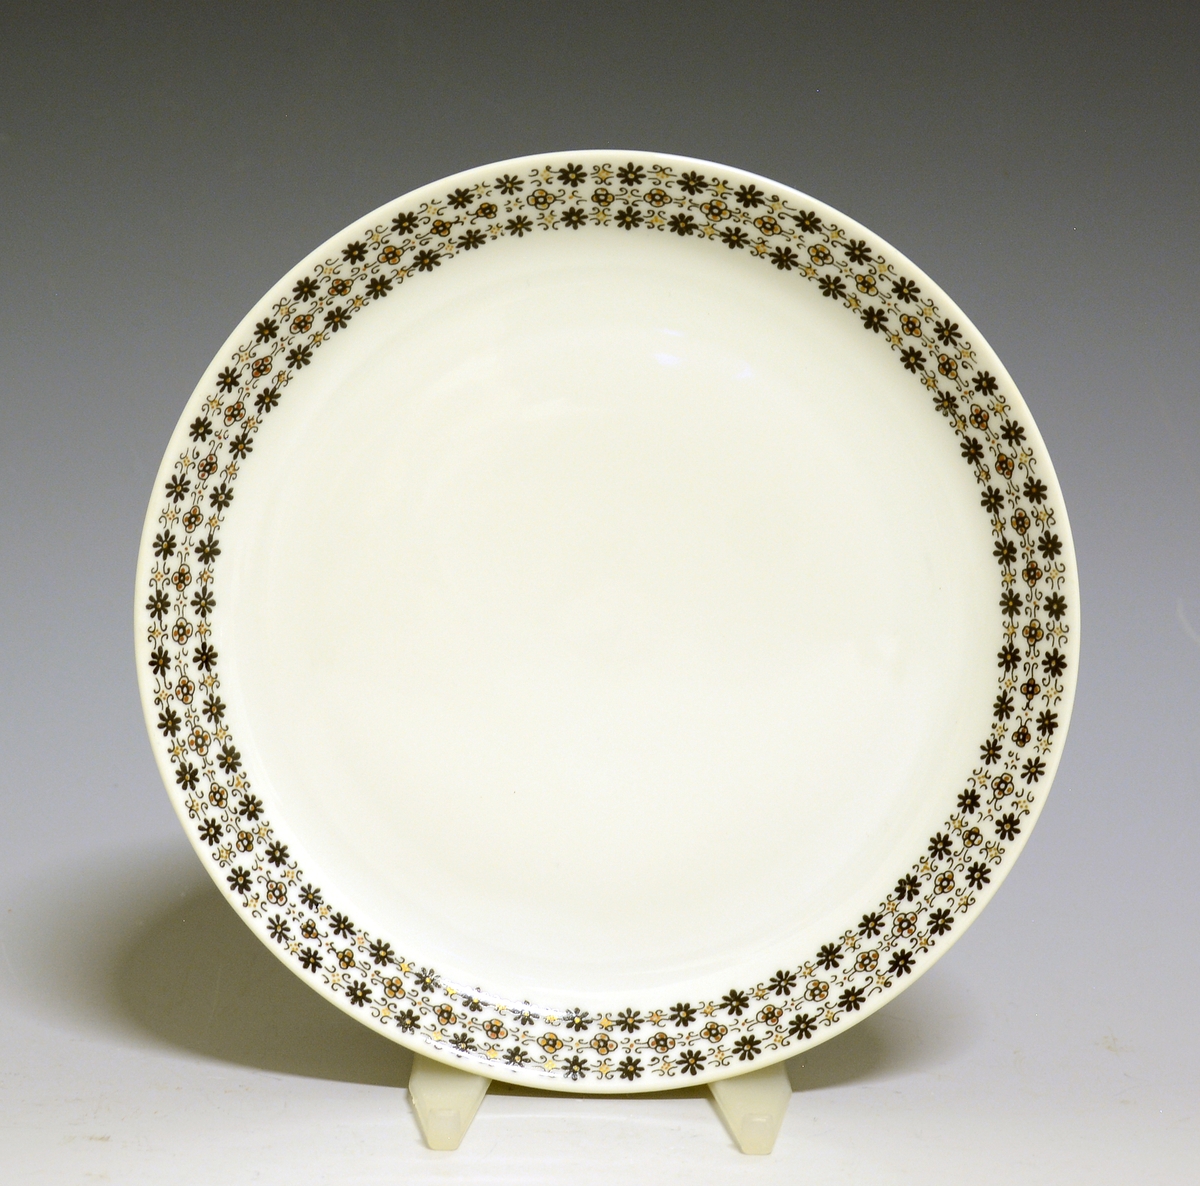 Asjett av porselen med hvit glasur og bord med småblomstret trykkdekor i sort og gull langs kanten.
Modell: Petita (eller variant av)
